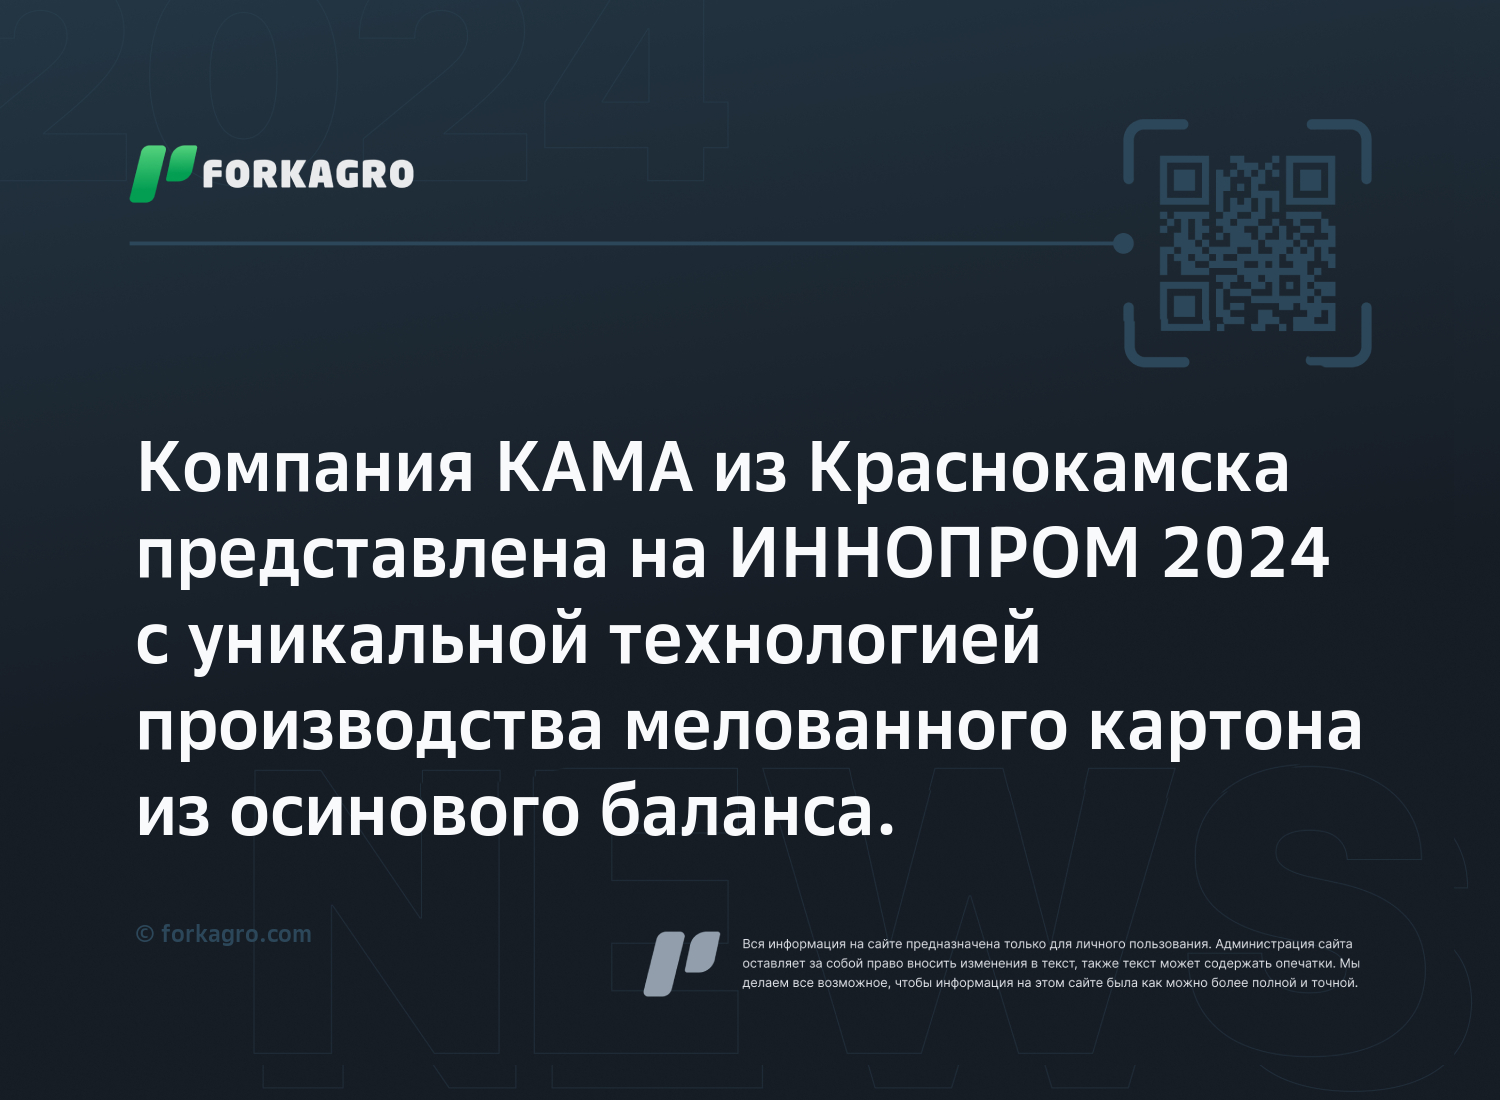 Компания КАМА из Краснокамска представлена на ИННОПРОМ 2024 с уникальной технологией производства мелованного картона из осинового баланса.